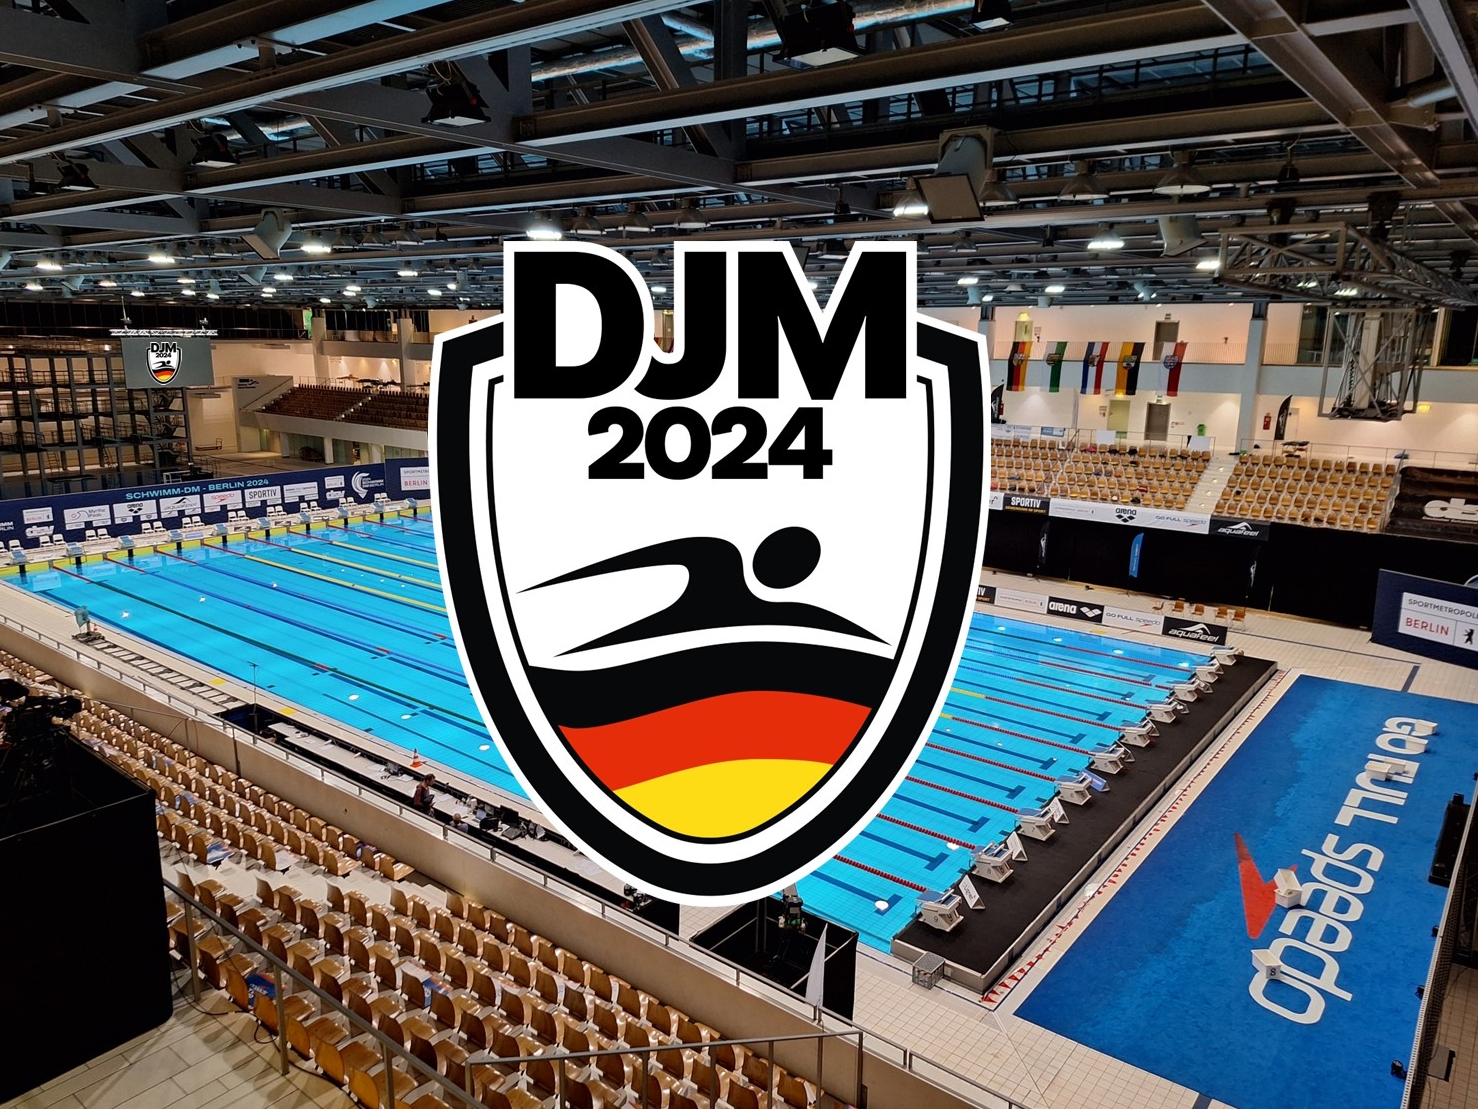 336 niedersächsische Starts bei der DJM 2024 in Berlin